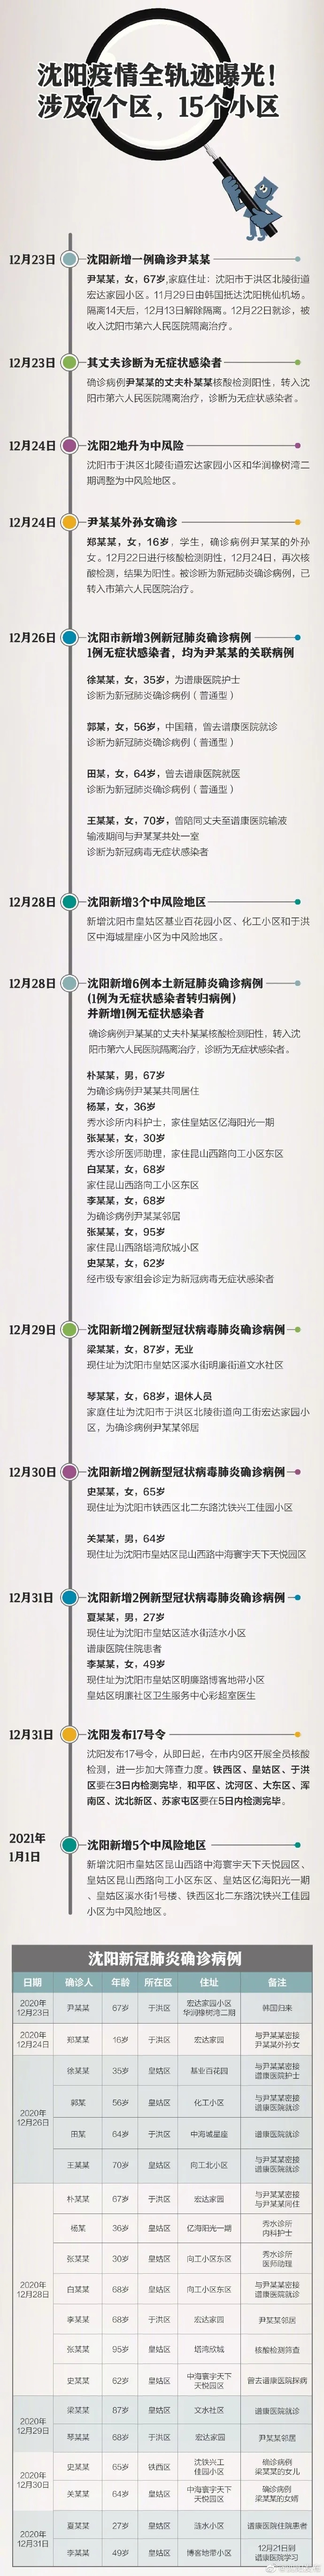 据不完全统计,自12月23日,沈阳市新增1例新型冠状病毒肺炎确诊病例为